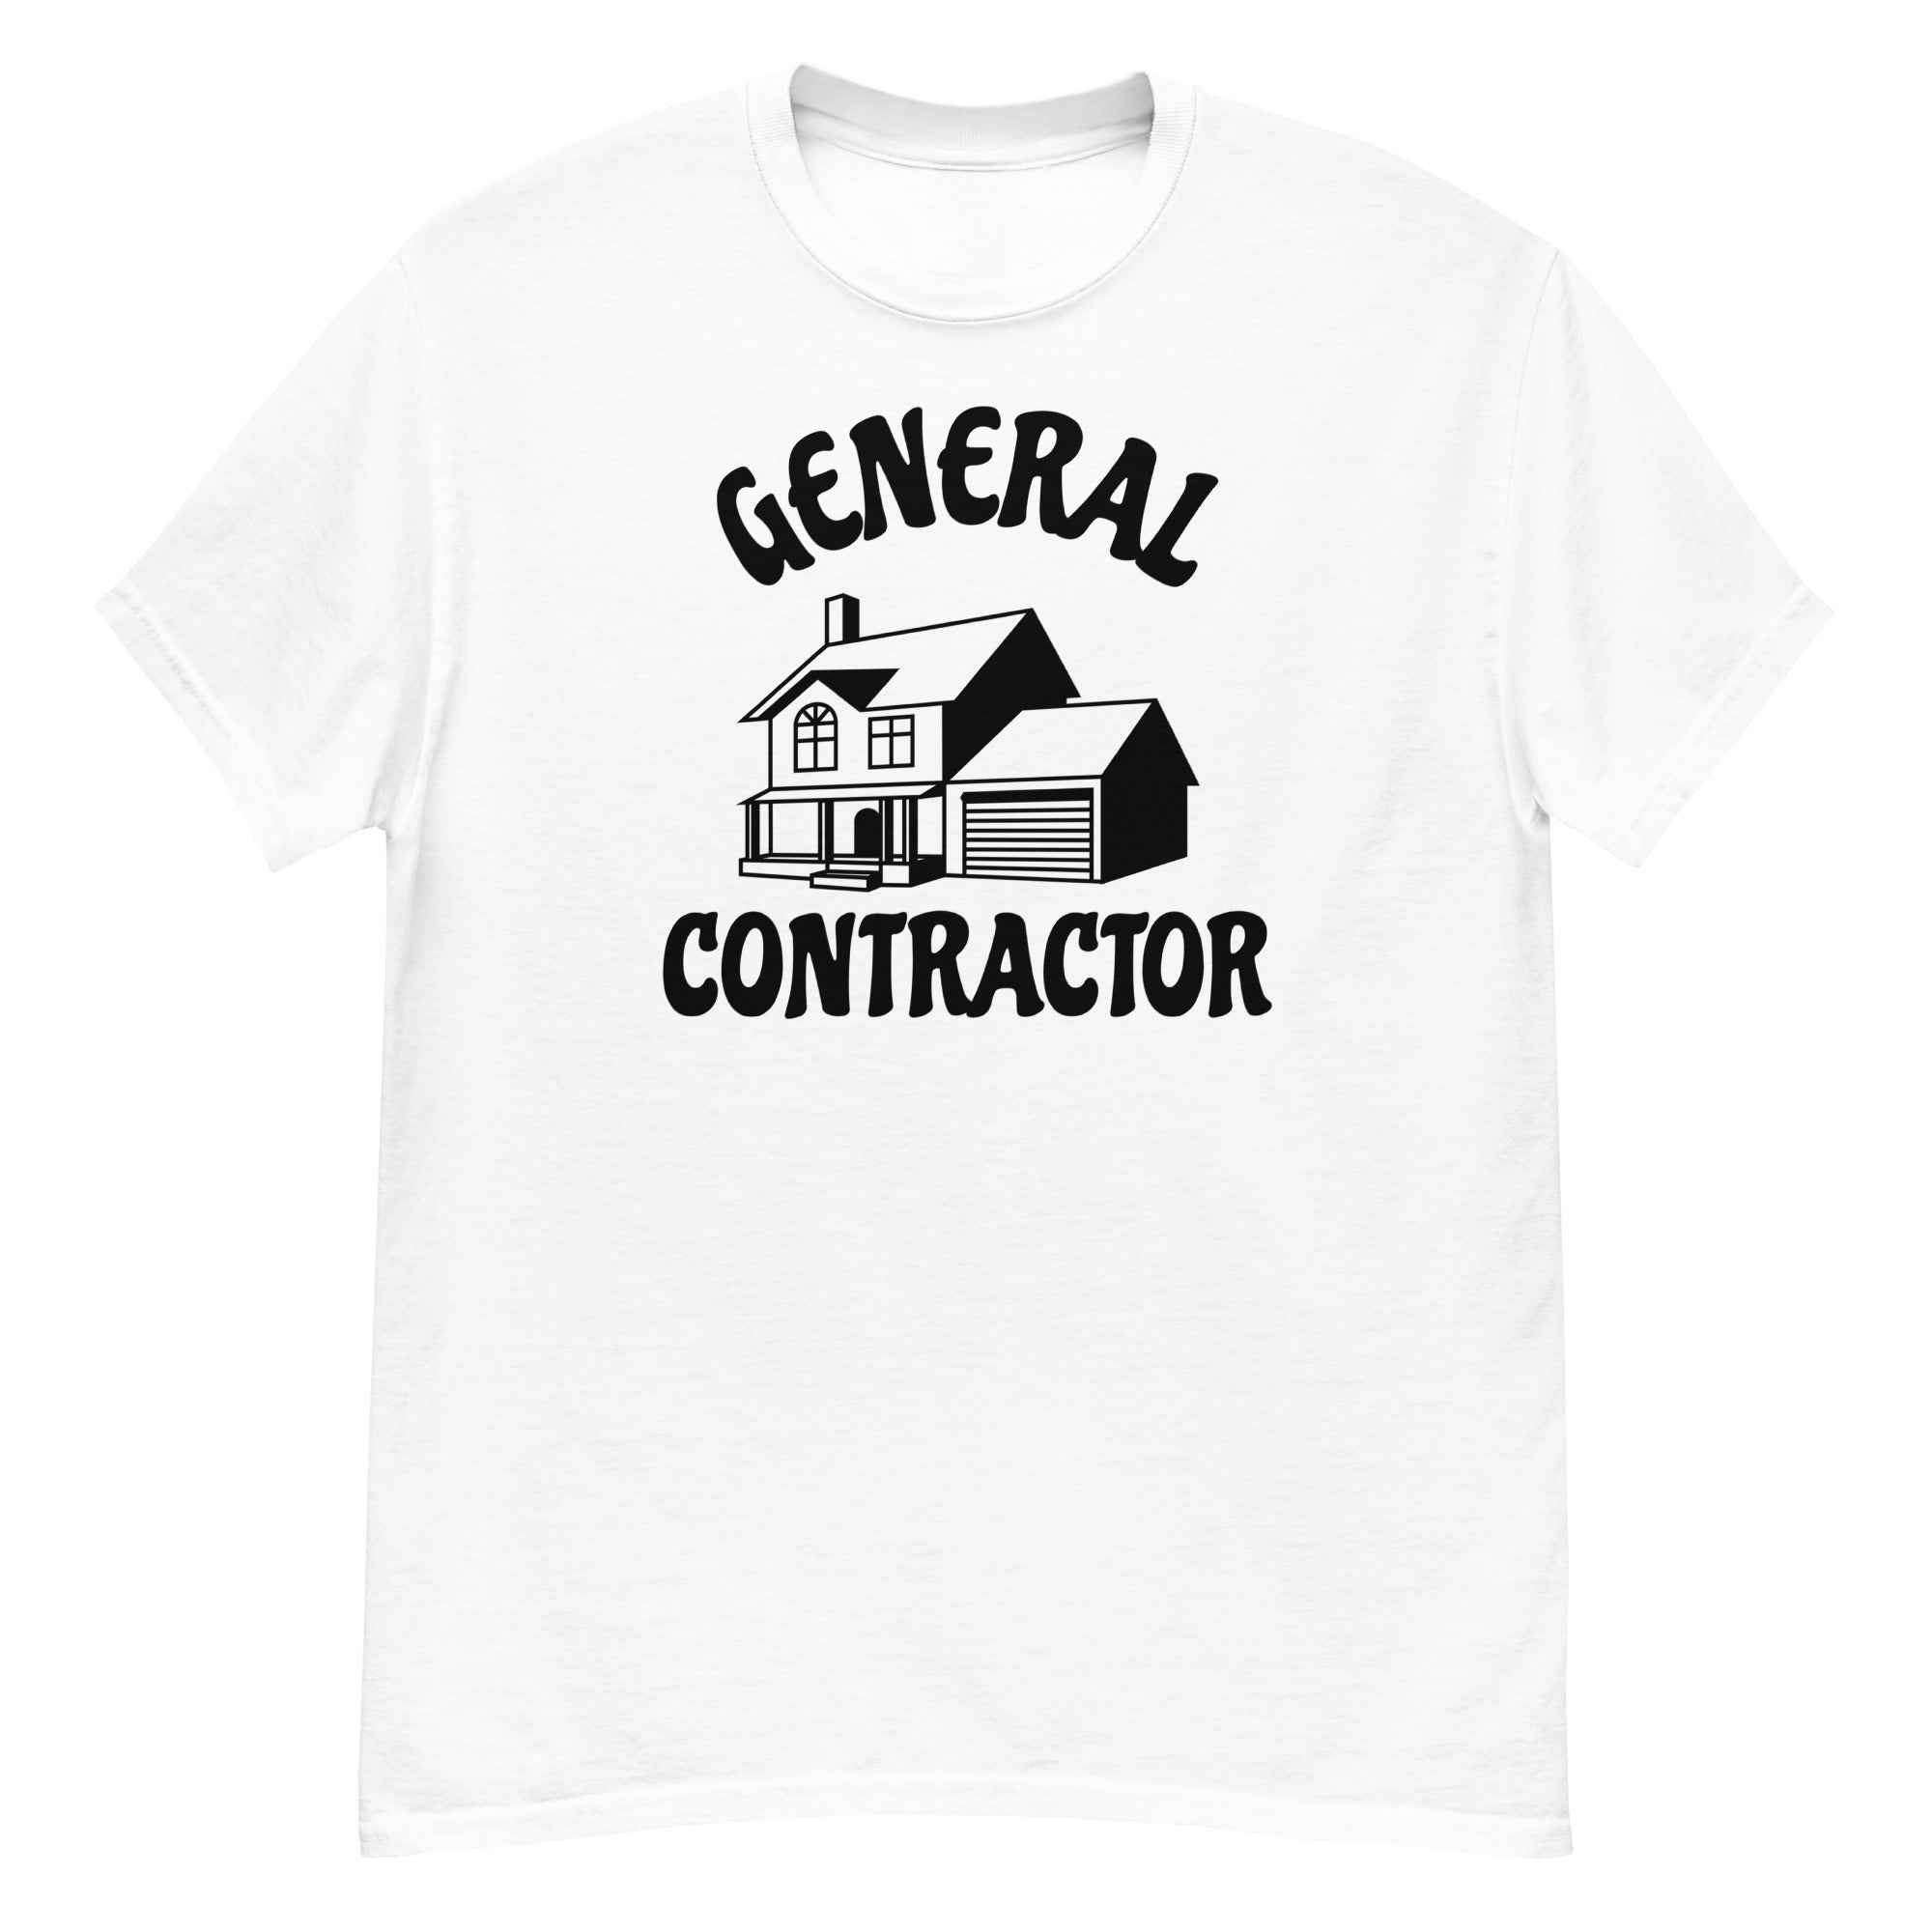 General Contractor Men's Classic T-Shirt